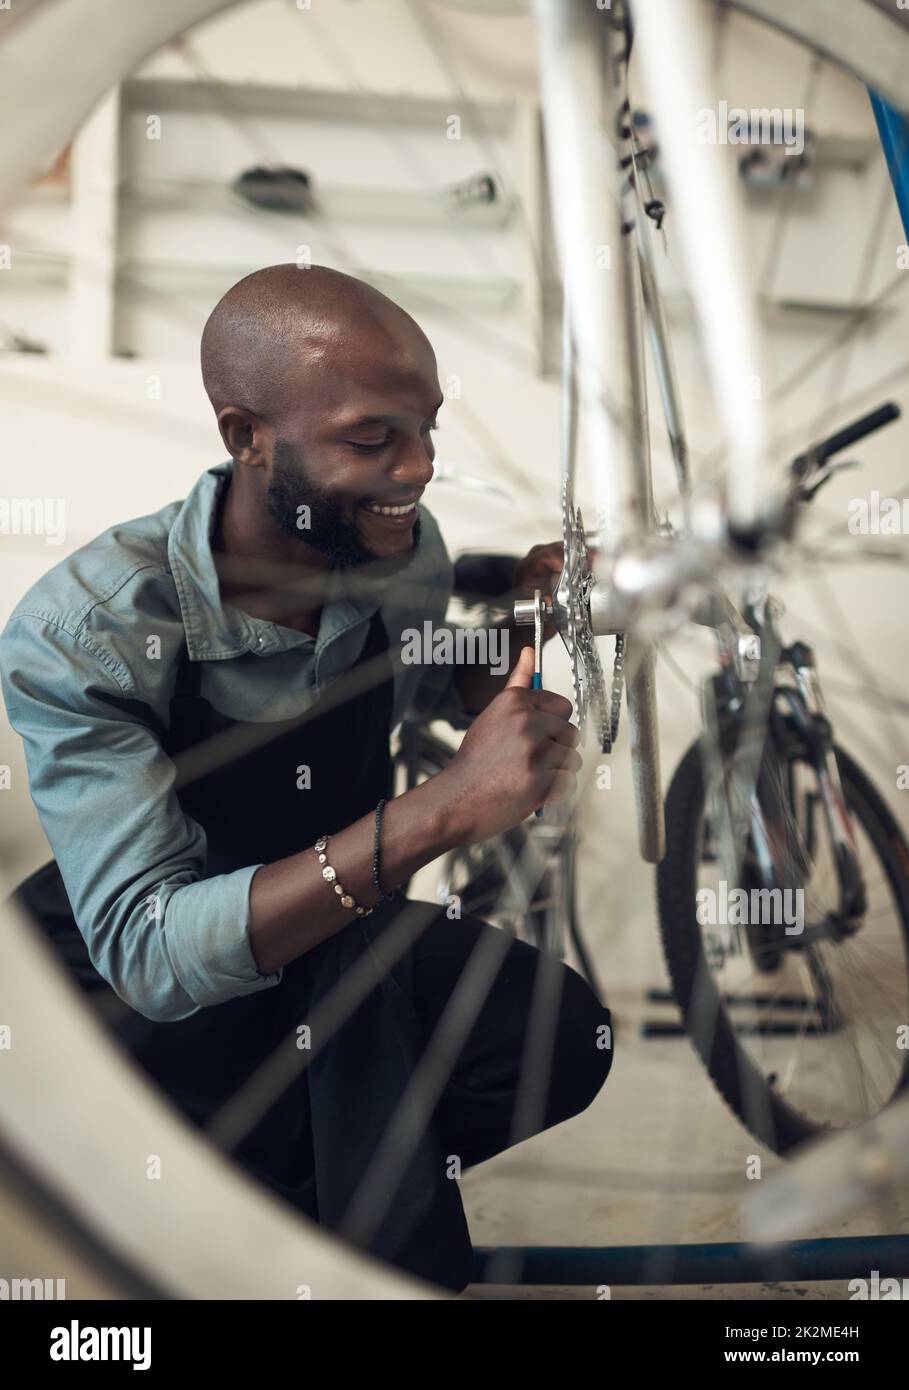 Pour que ce vélo soit tout neuf. Photo d'un beau jeune homme qui s'est accroupi seul dans son atelier et a réparé une roue de vélo. Banque D'Images